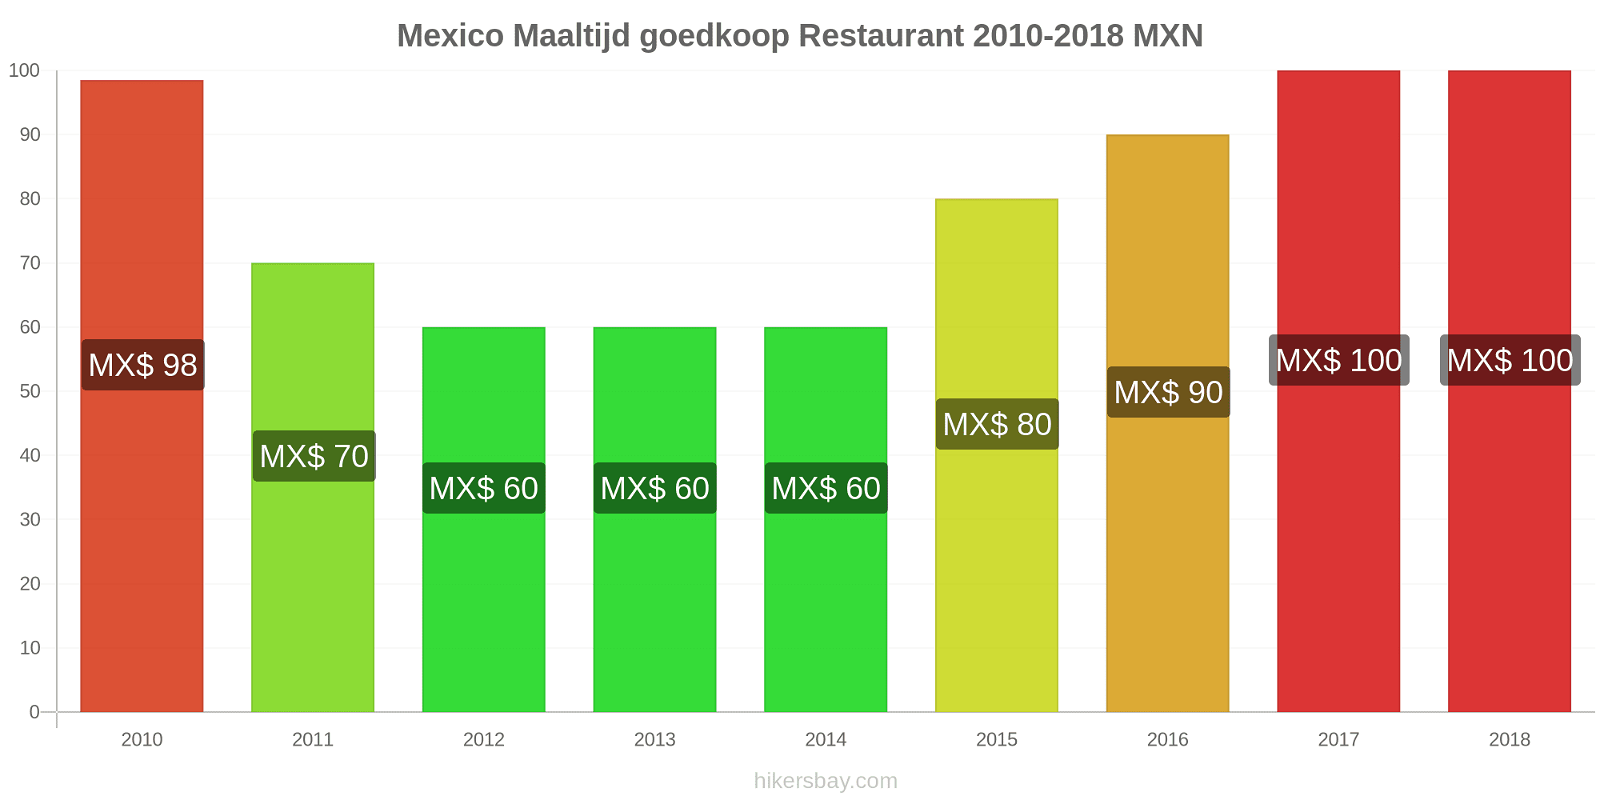 Mexico prijswijzigingen Maaltijd in een goedkoop restaurant hikersbay.com